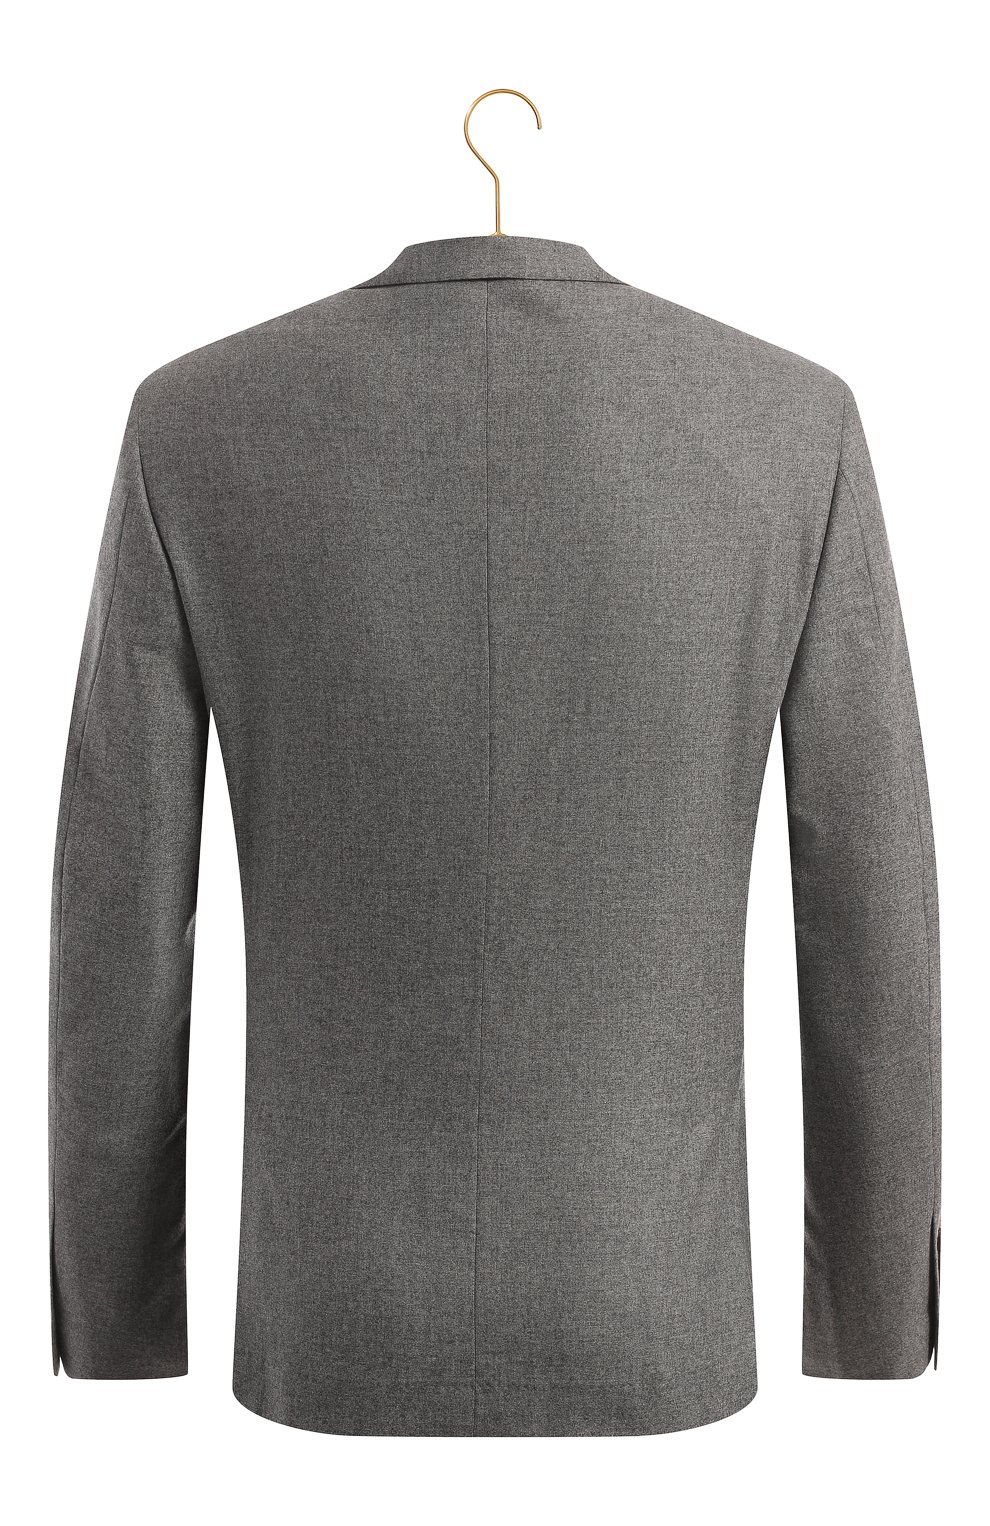 Кашемировый пиджак | Brunello Cucinelli | Серый - 2